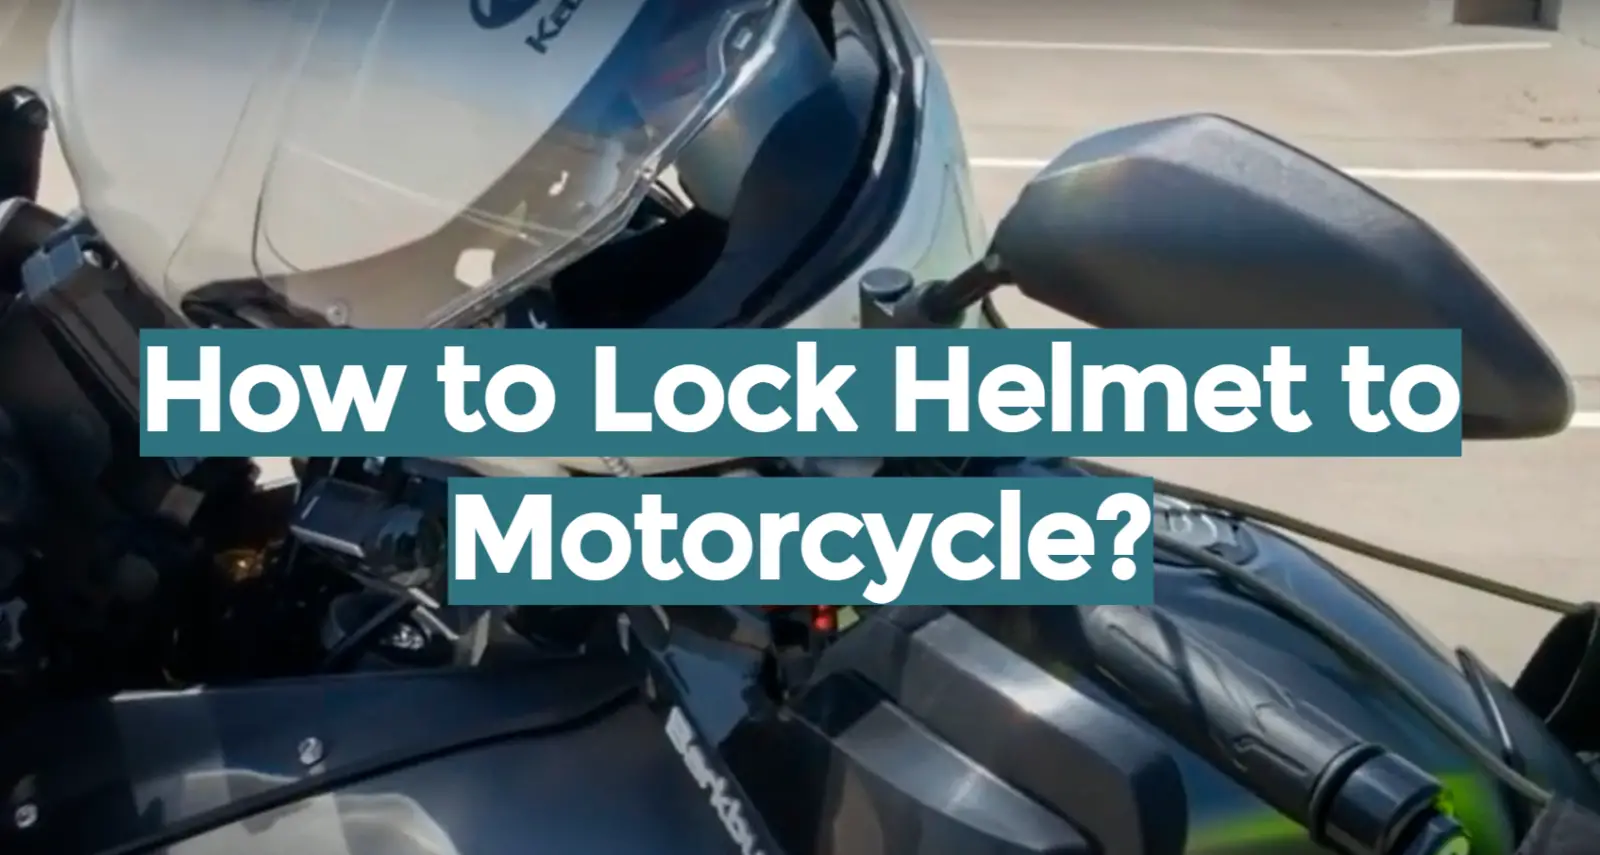 How to Lock Helmet to Motorcycle?